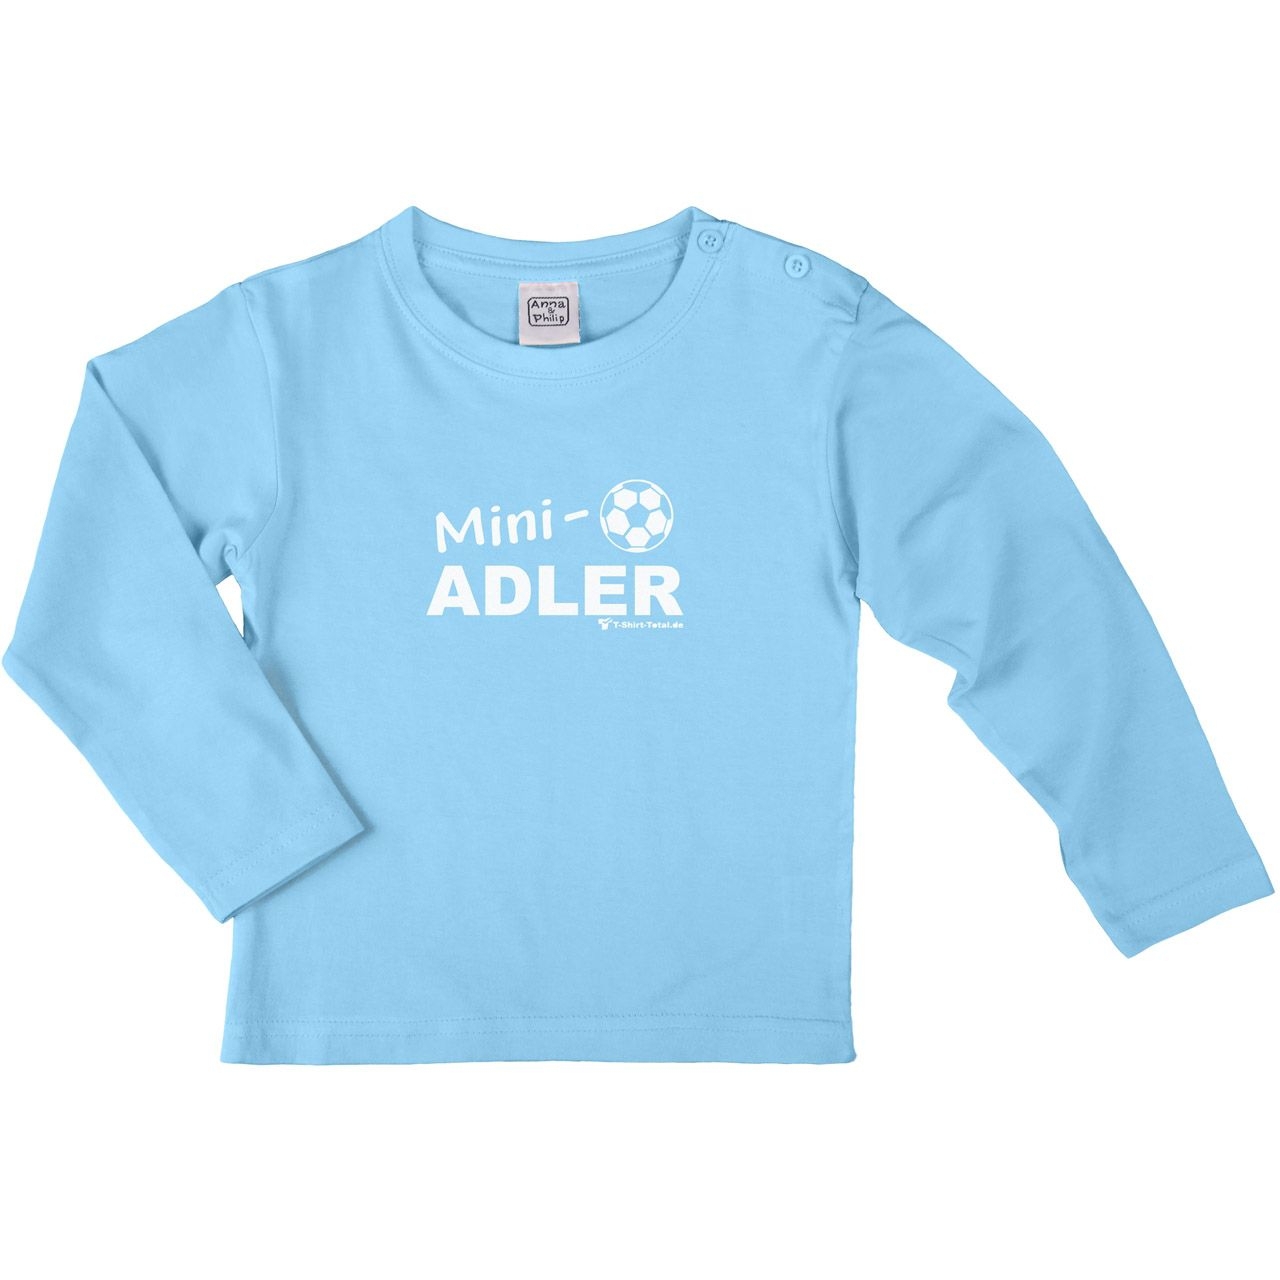 Mini Adler Kinder Langarm Shirt hellblau 122 / 128